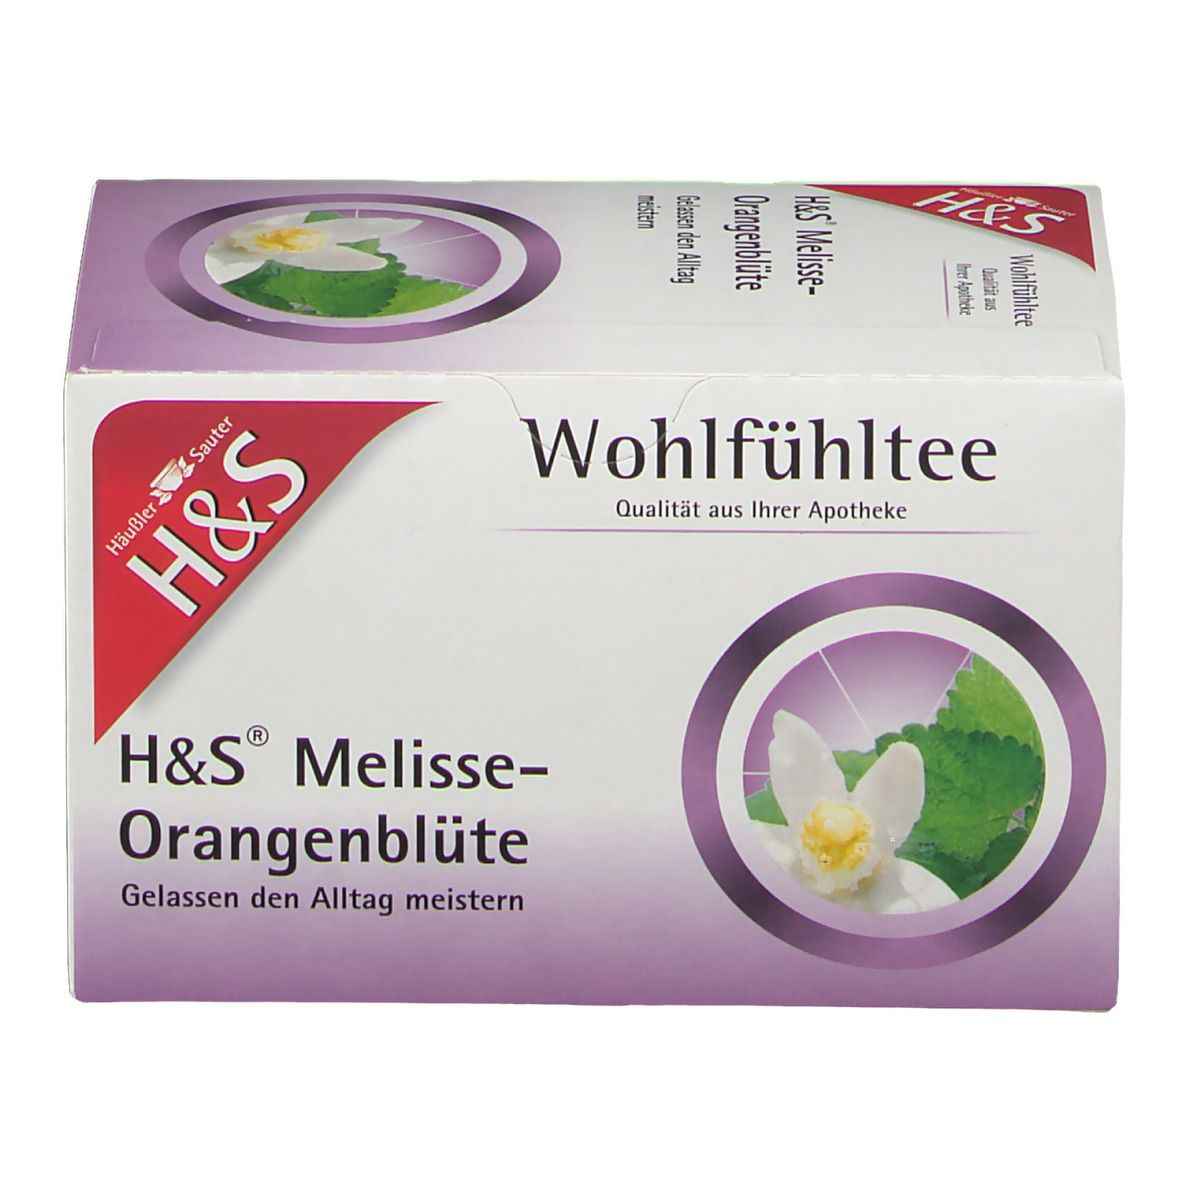 H&S Wohlfühltee Melisse Orangenblüte Nr. 58